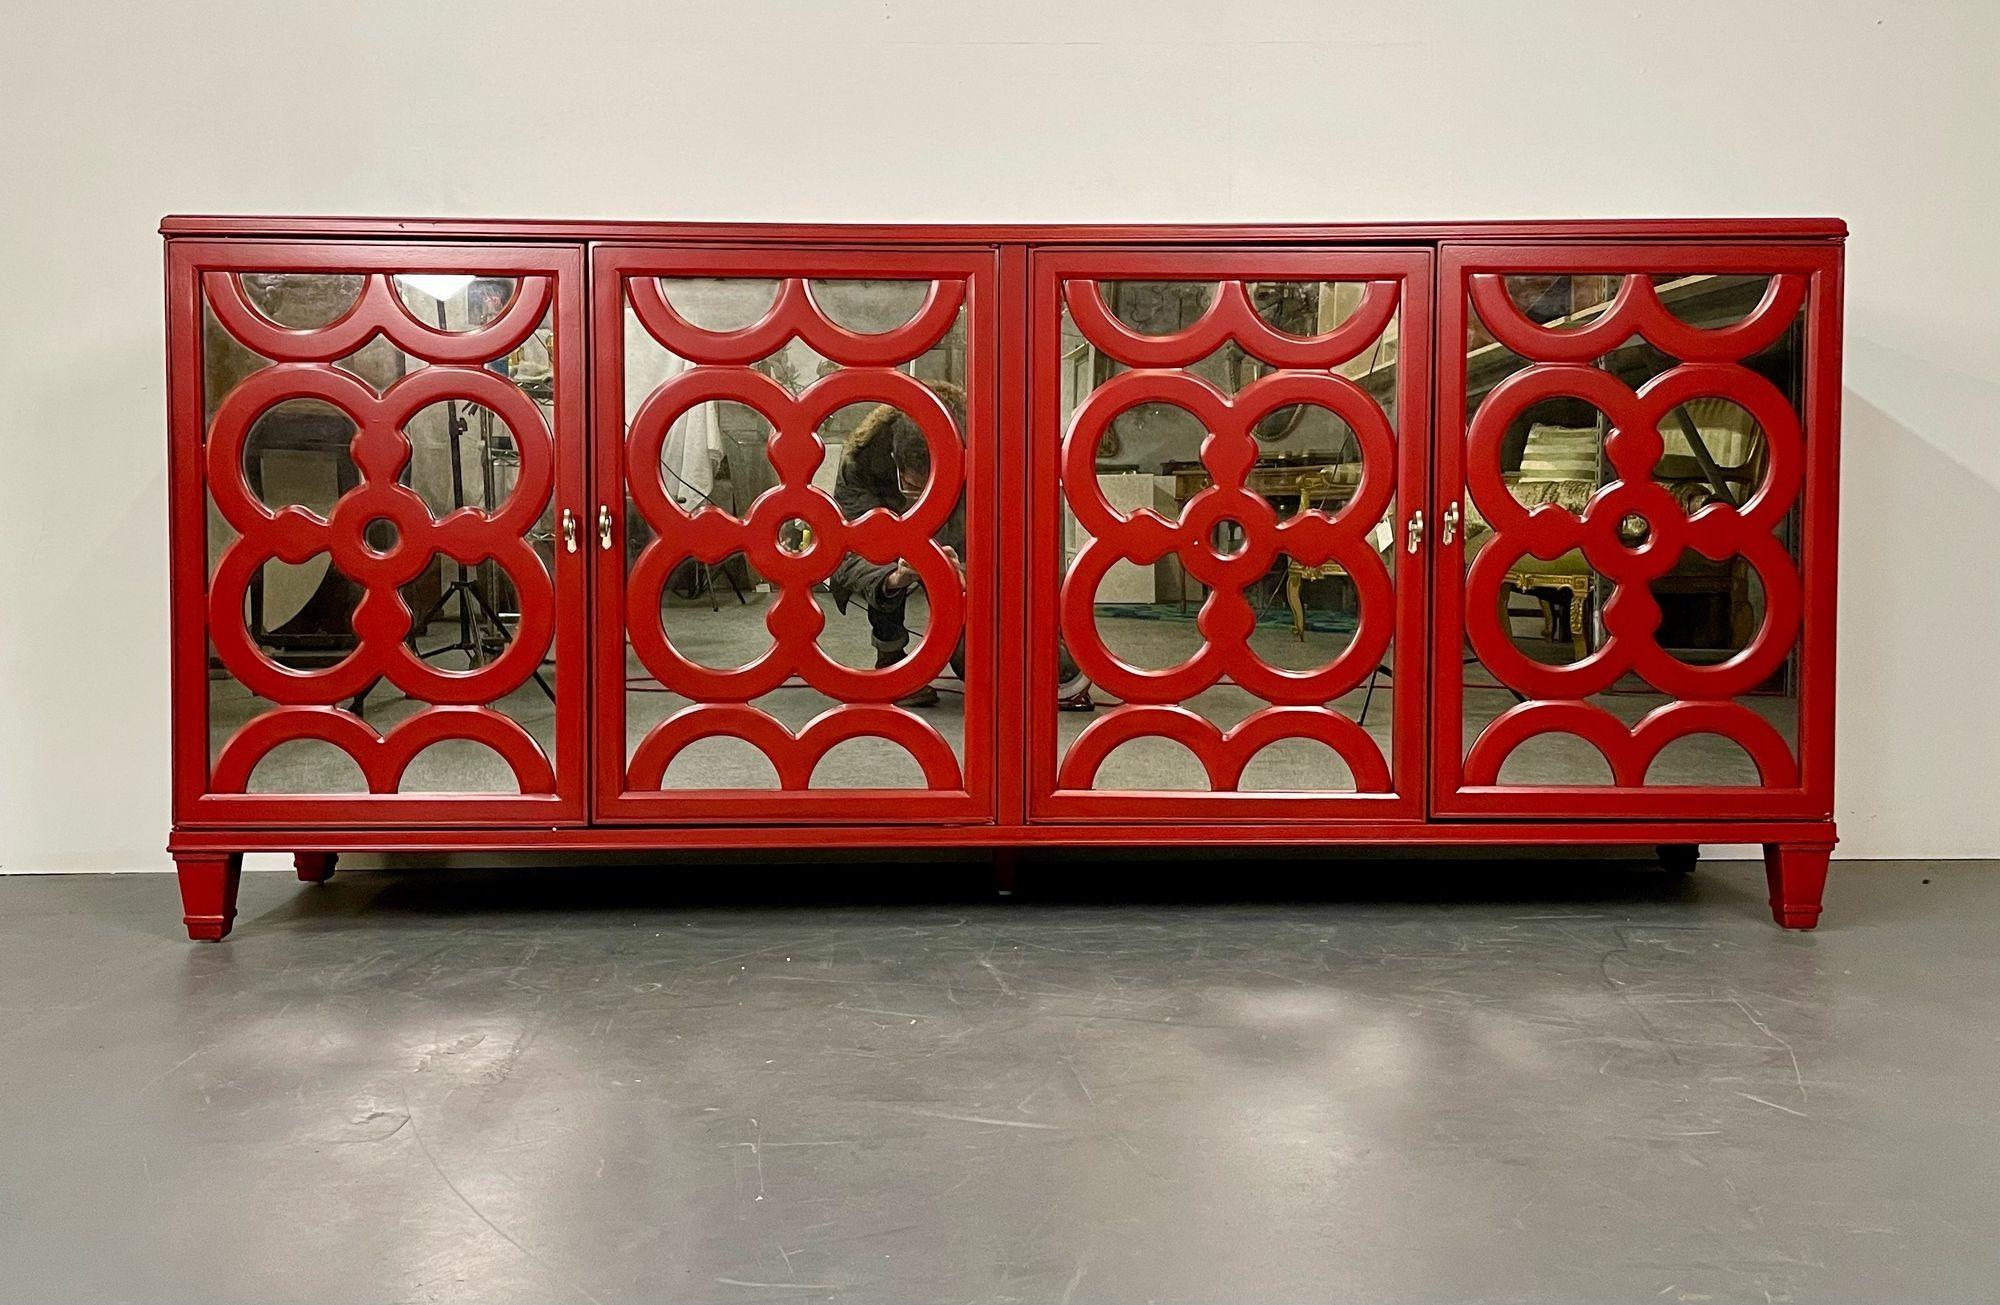 Credenza, cassettiera o cassettone moderno, laccato rosso, a specchio In condizioni buone in vendita a Stamford, CT